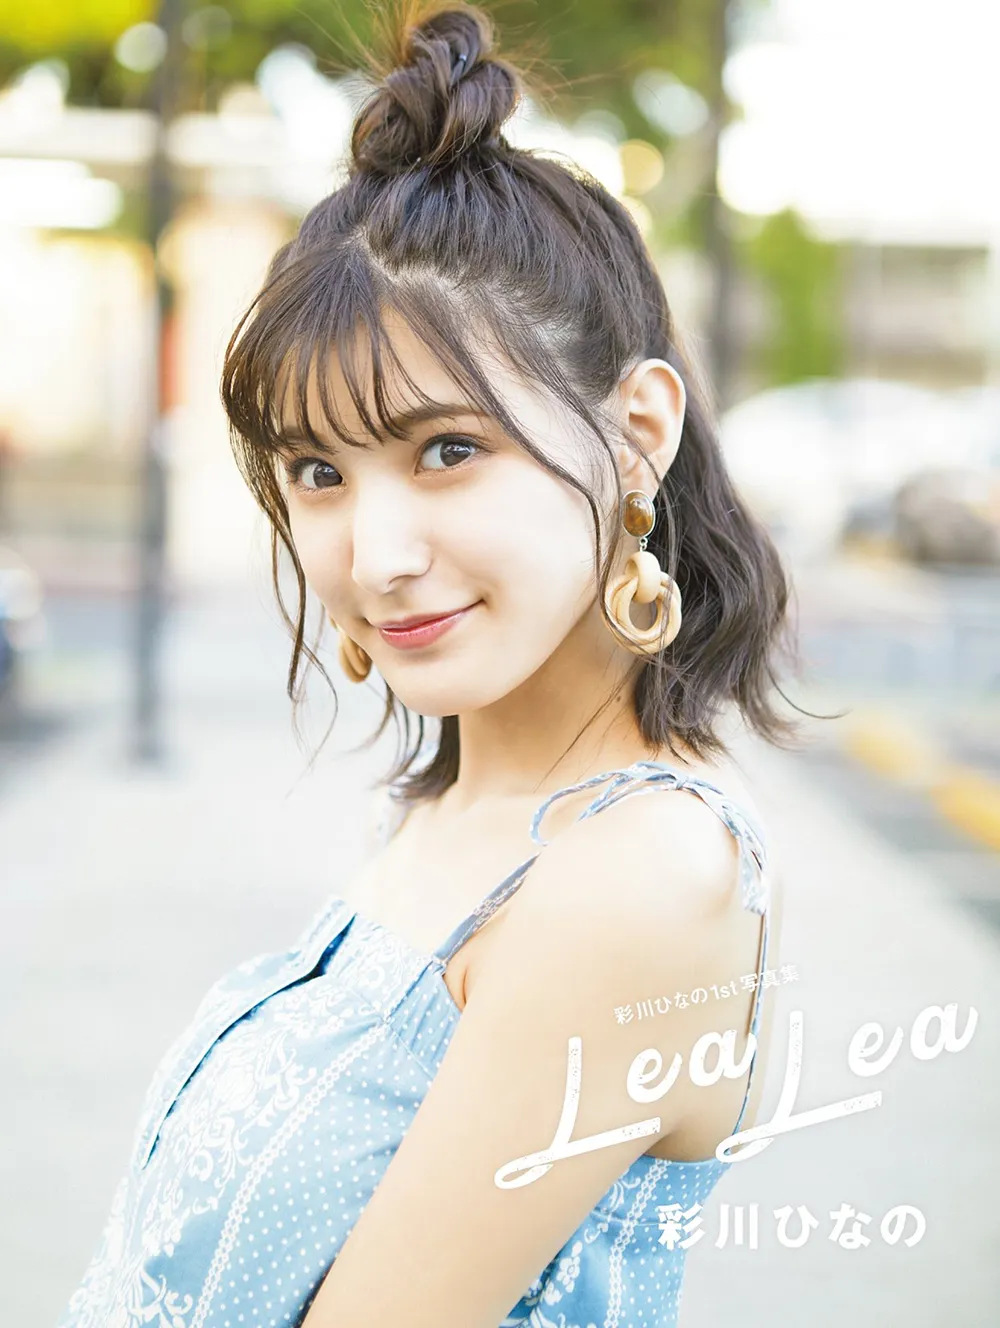 彩川ひなのファースト写真集「LeaLea」は11月25日に発売